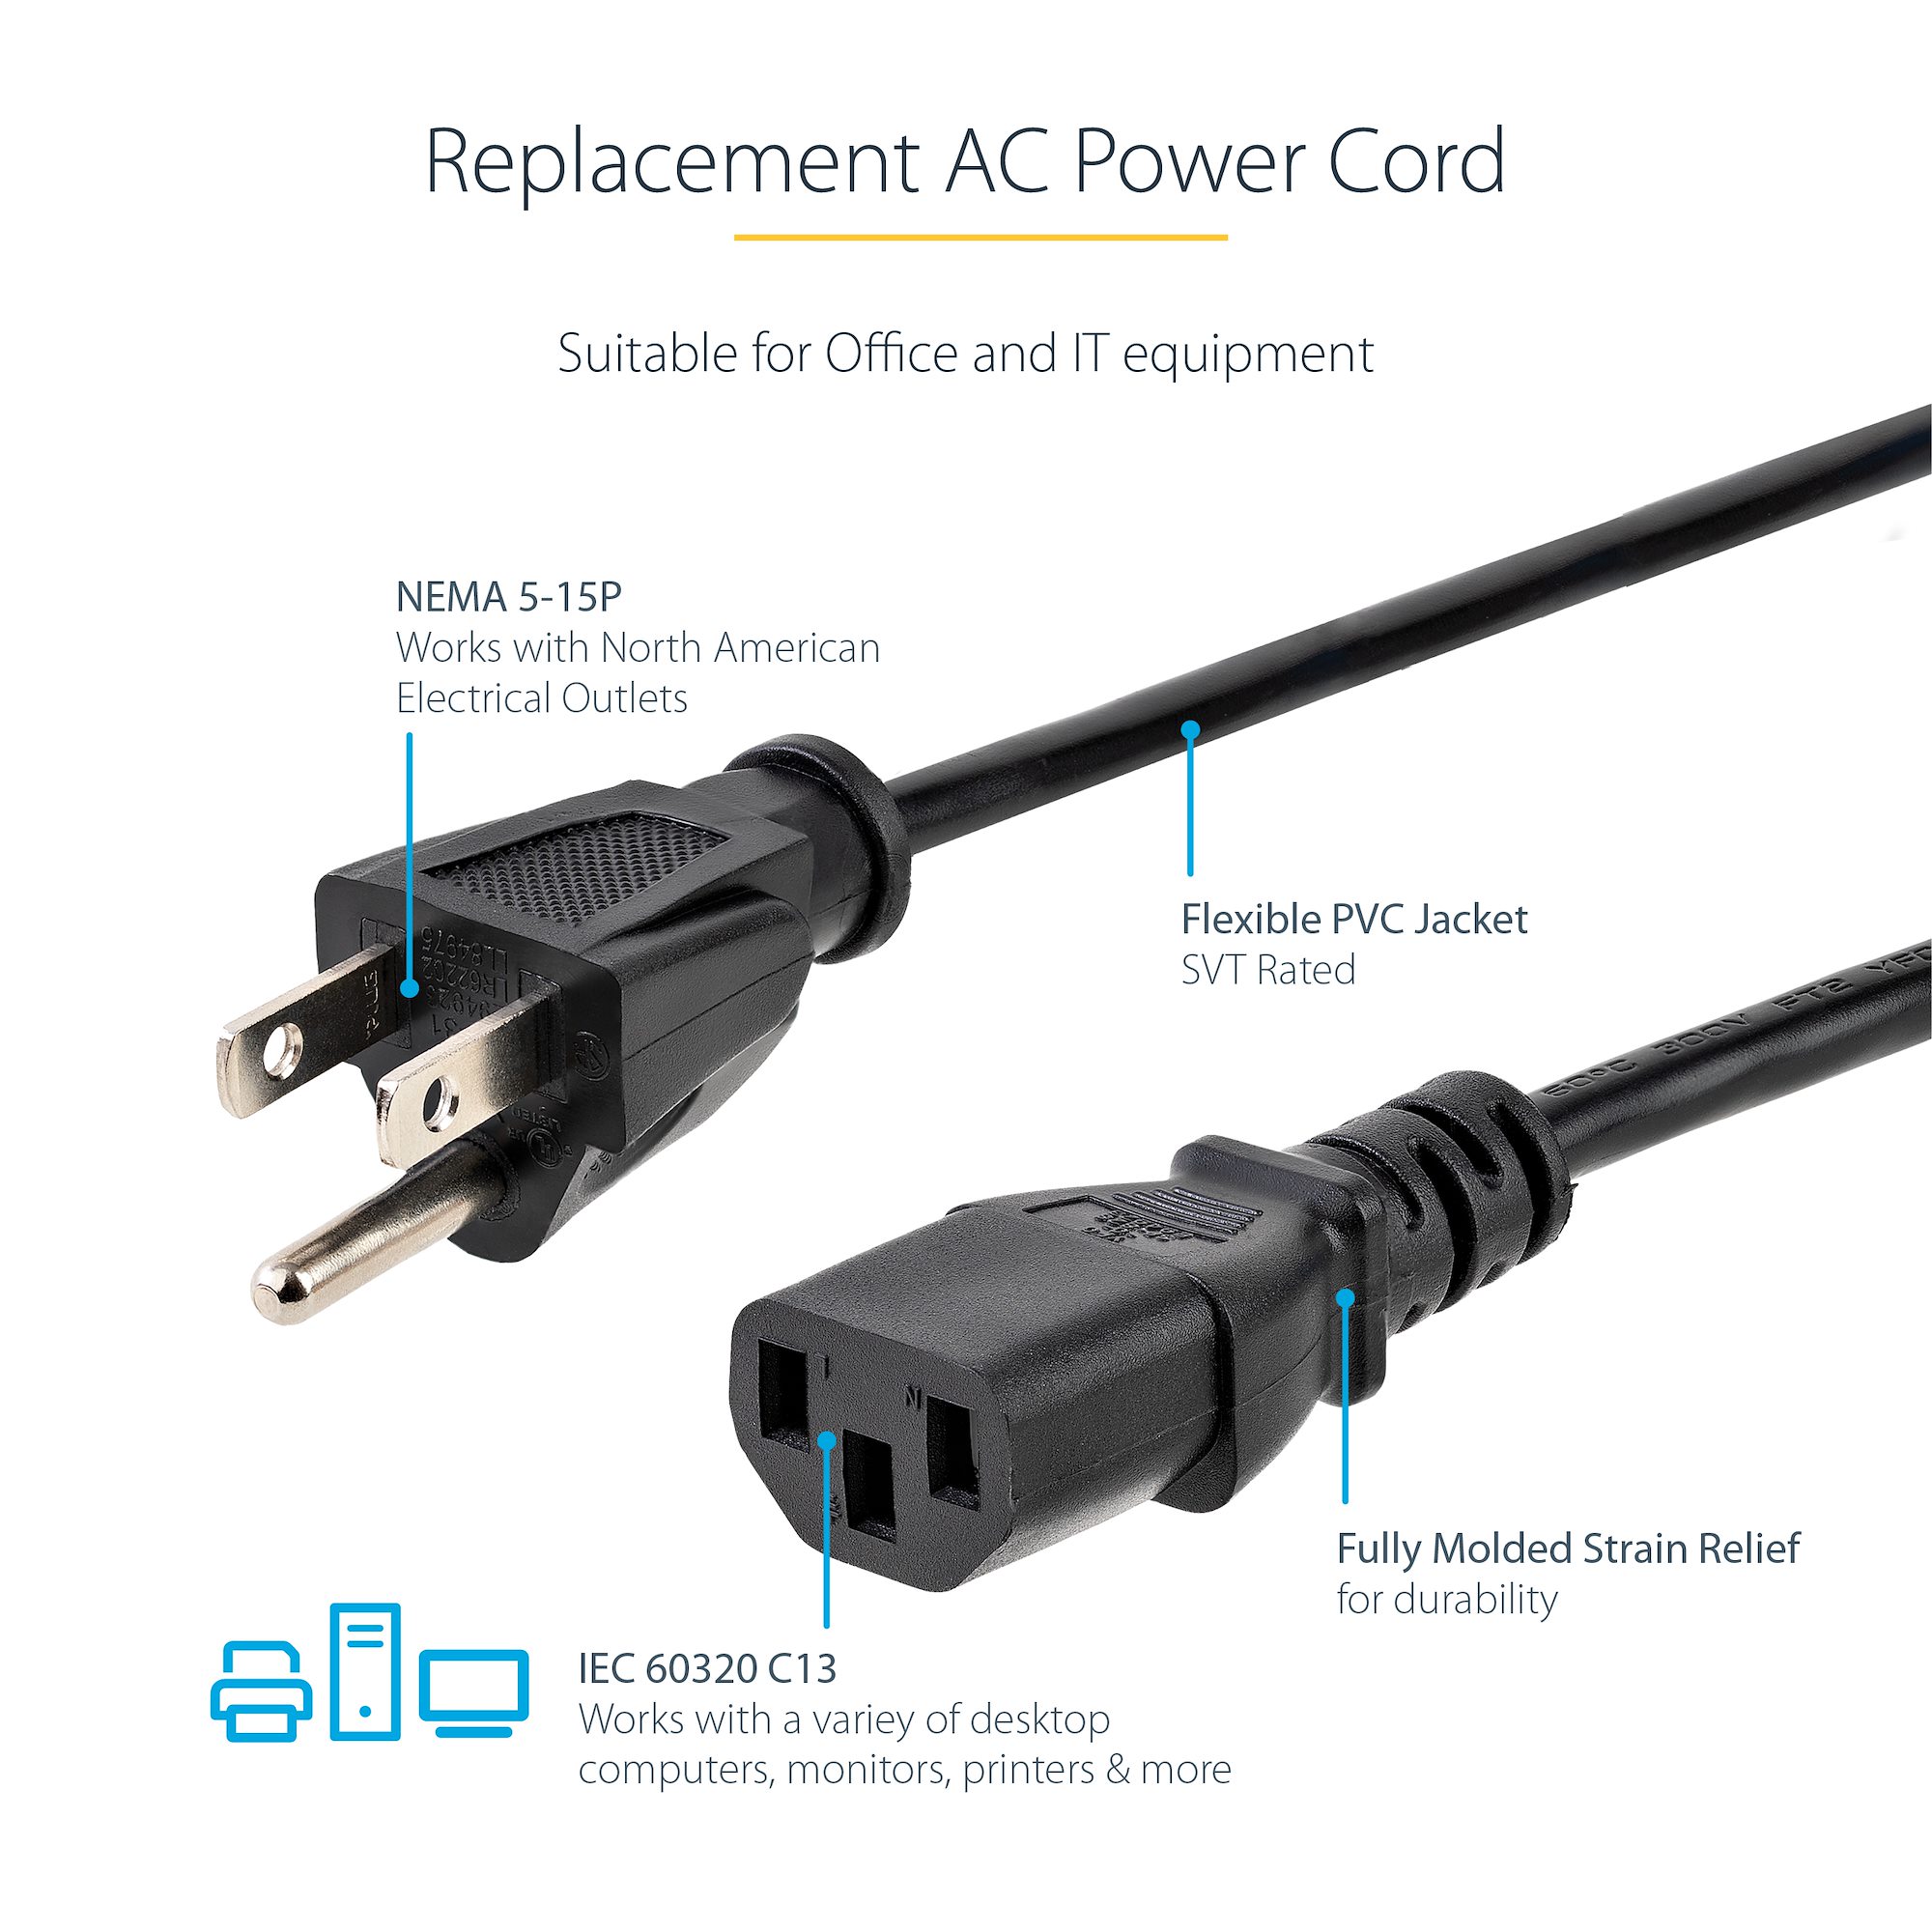 Equip Conector IEC C7 a 2 PIN 1.8m - Cable Alimentación